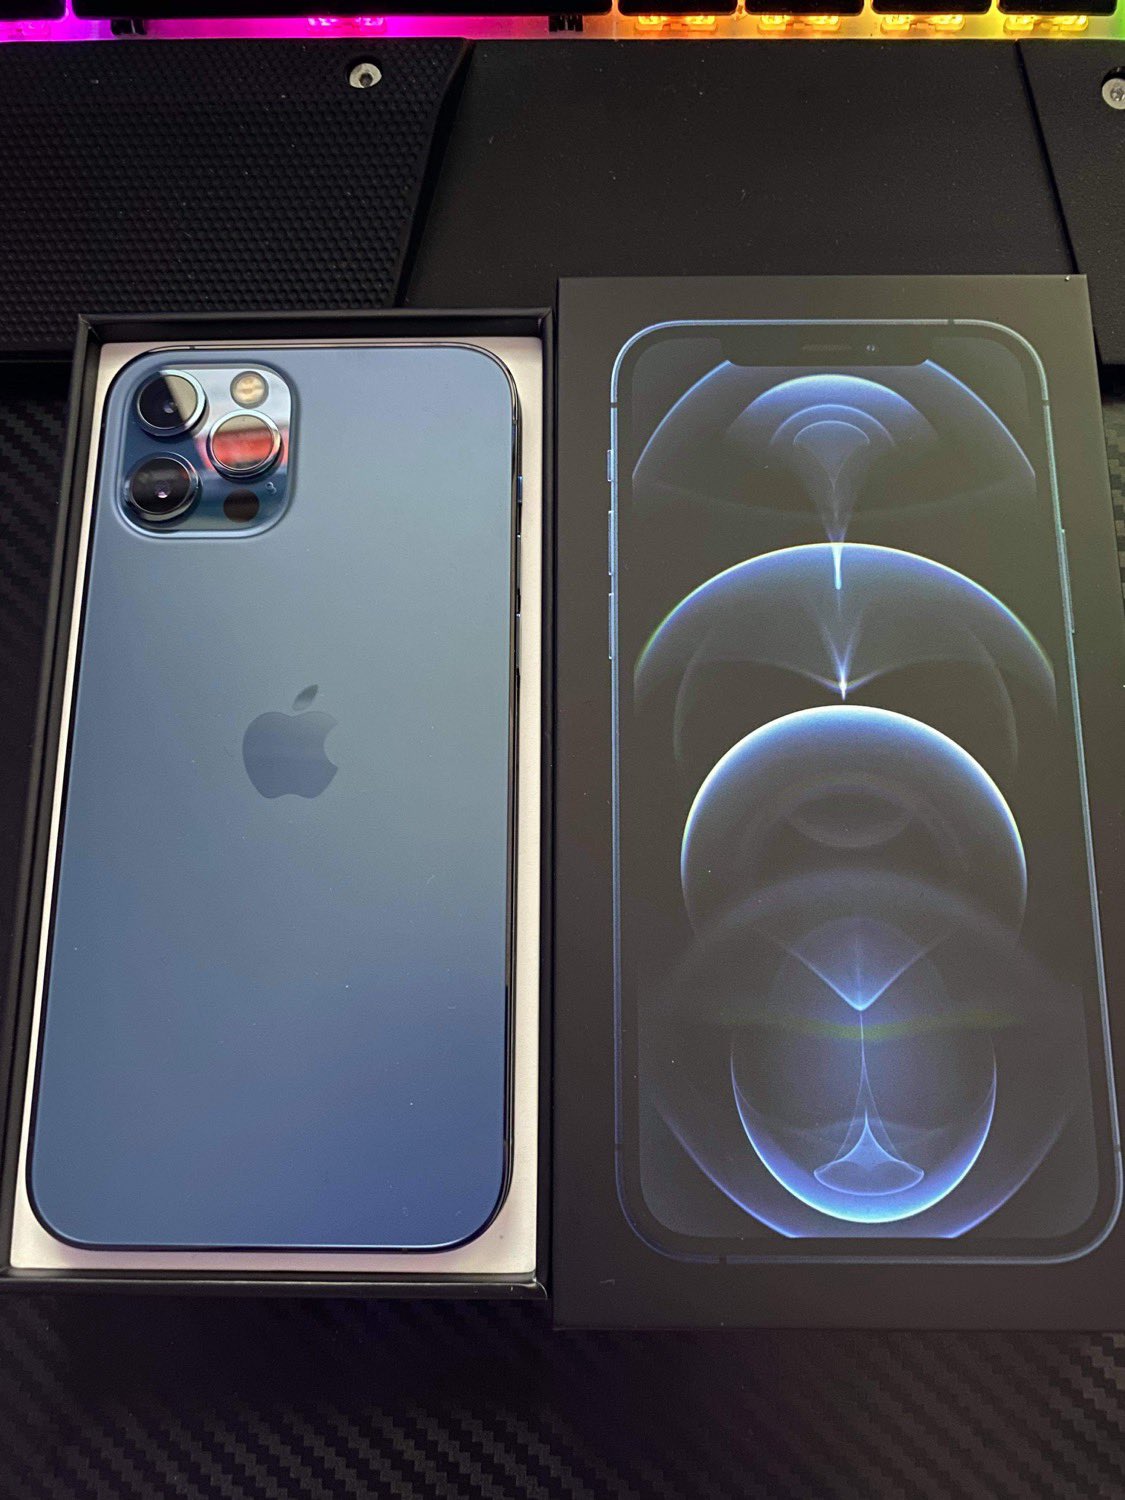 Apple iPhone 12 Pro, iPhone 12 Pro Max, iPhone 12 in vendita - foto 1